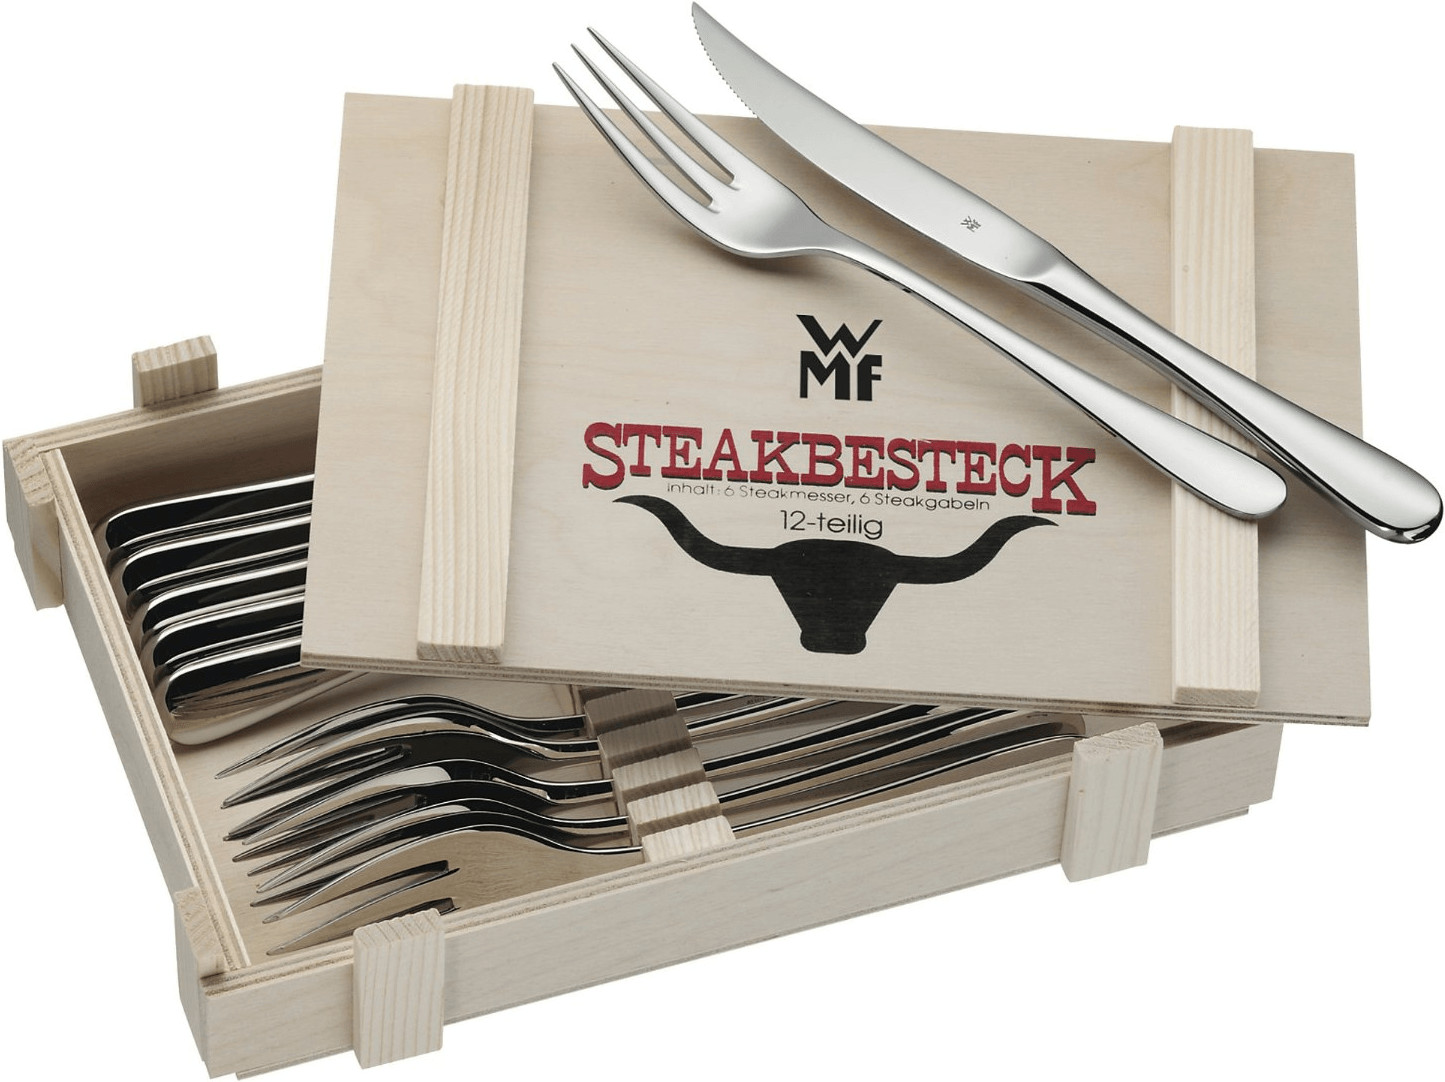 Bild zu 12-teiliges WMF Steakbesteck mit Holzkiste für 26,34€ (Vergleich: 32,80€)